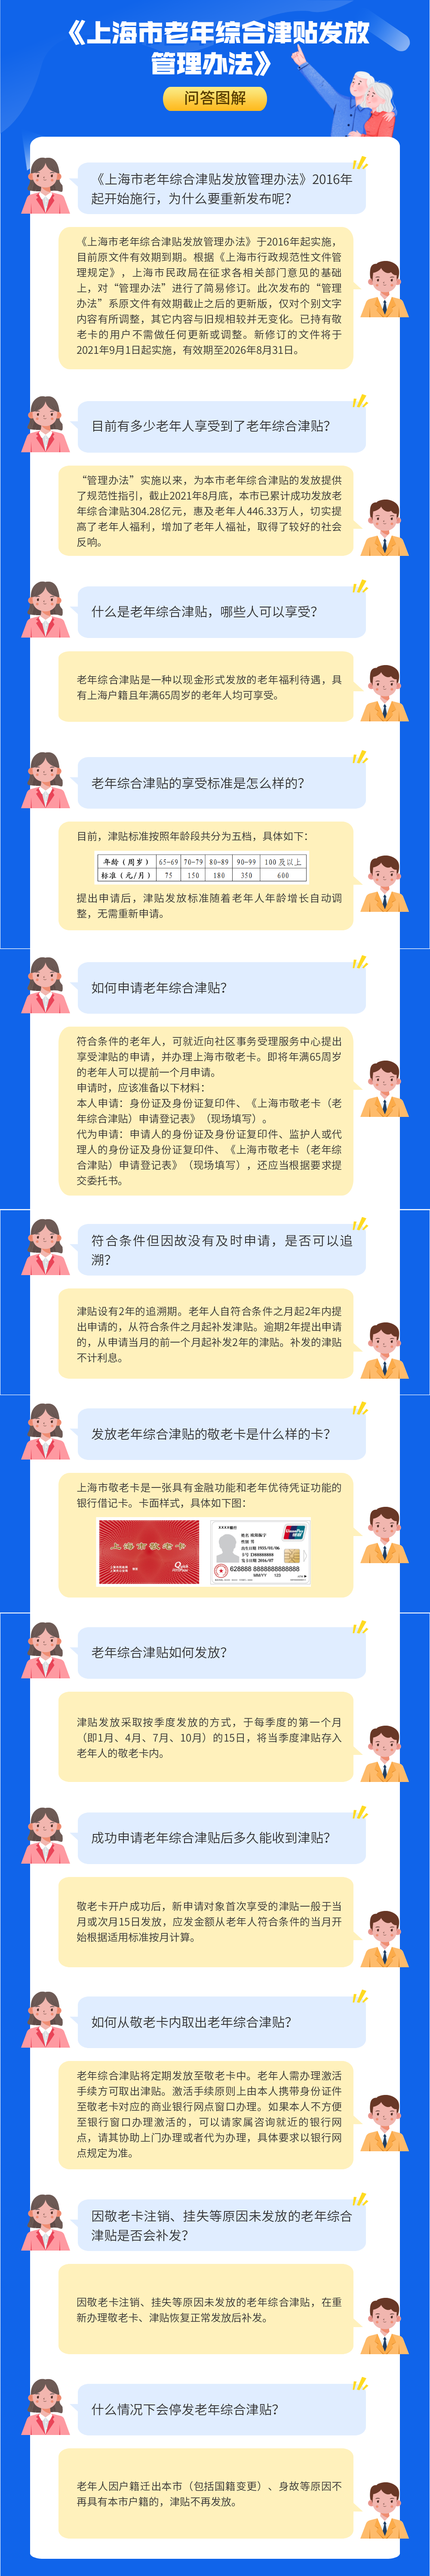 《上海市老年综合津贴发放管理办法》问答图解.png